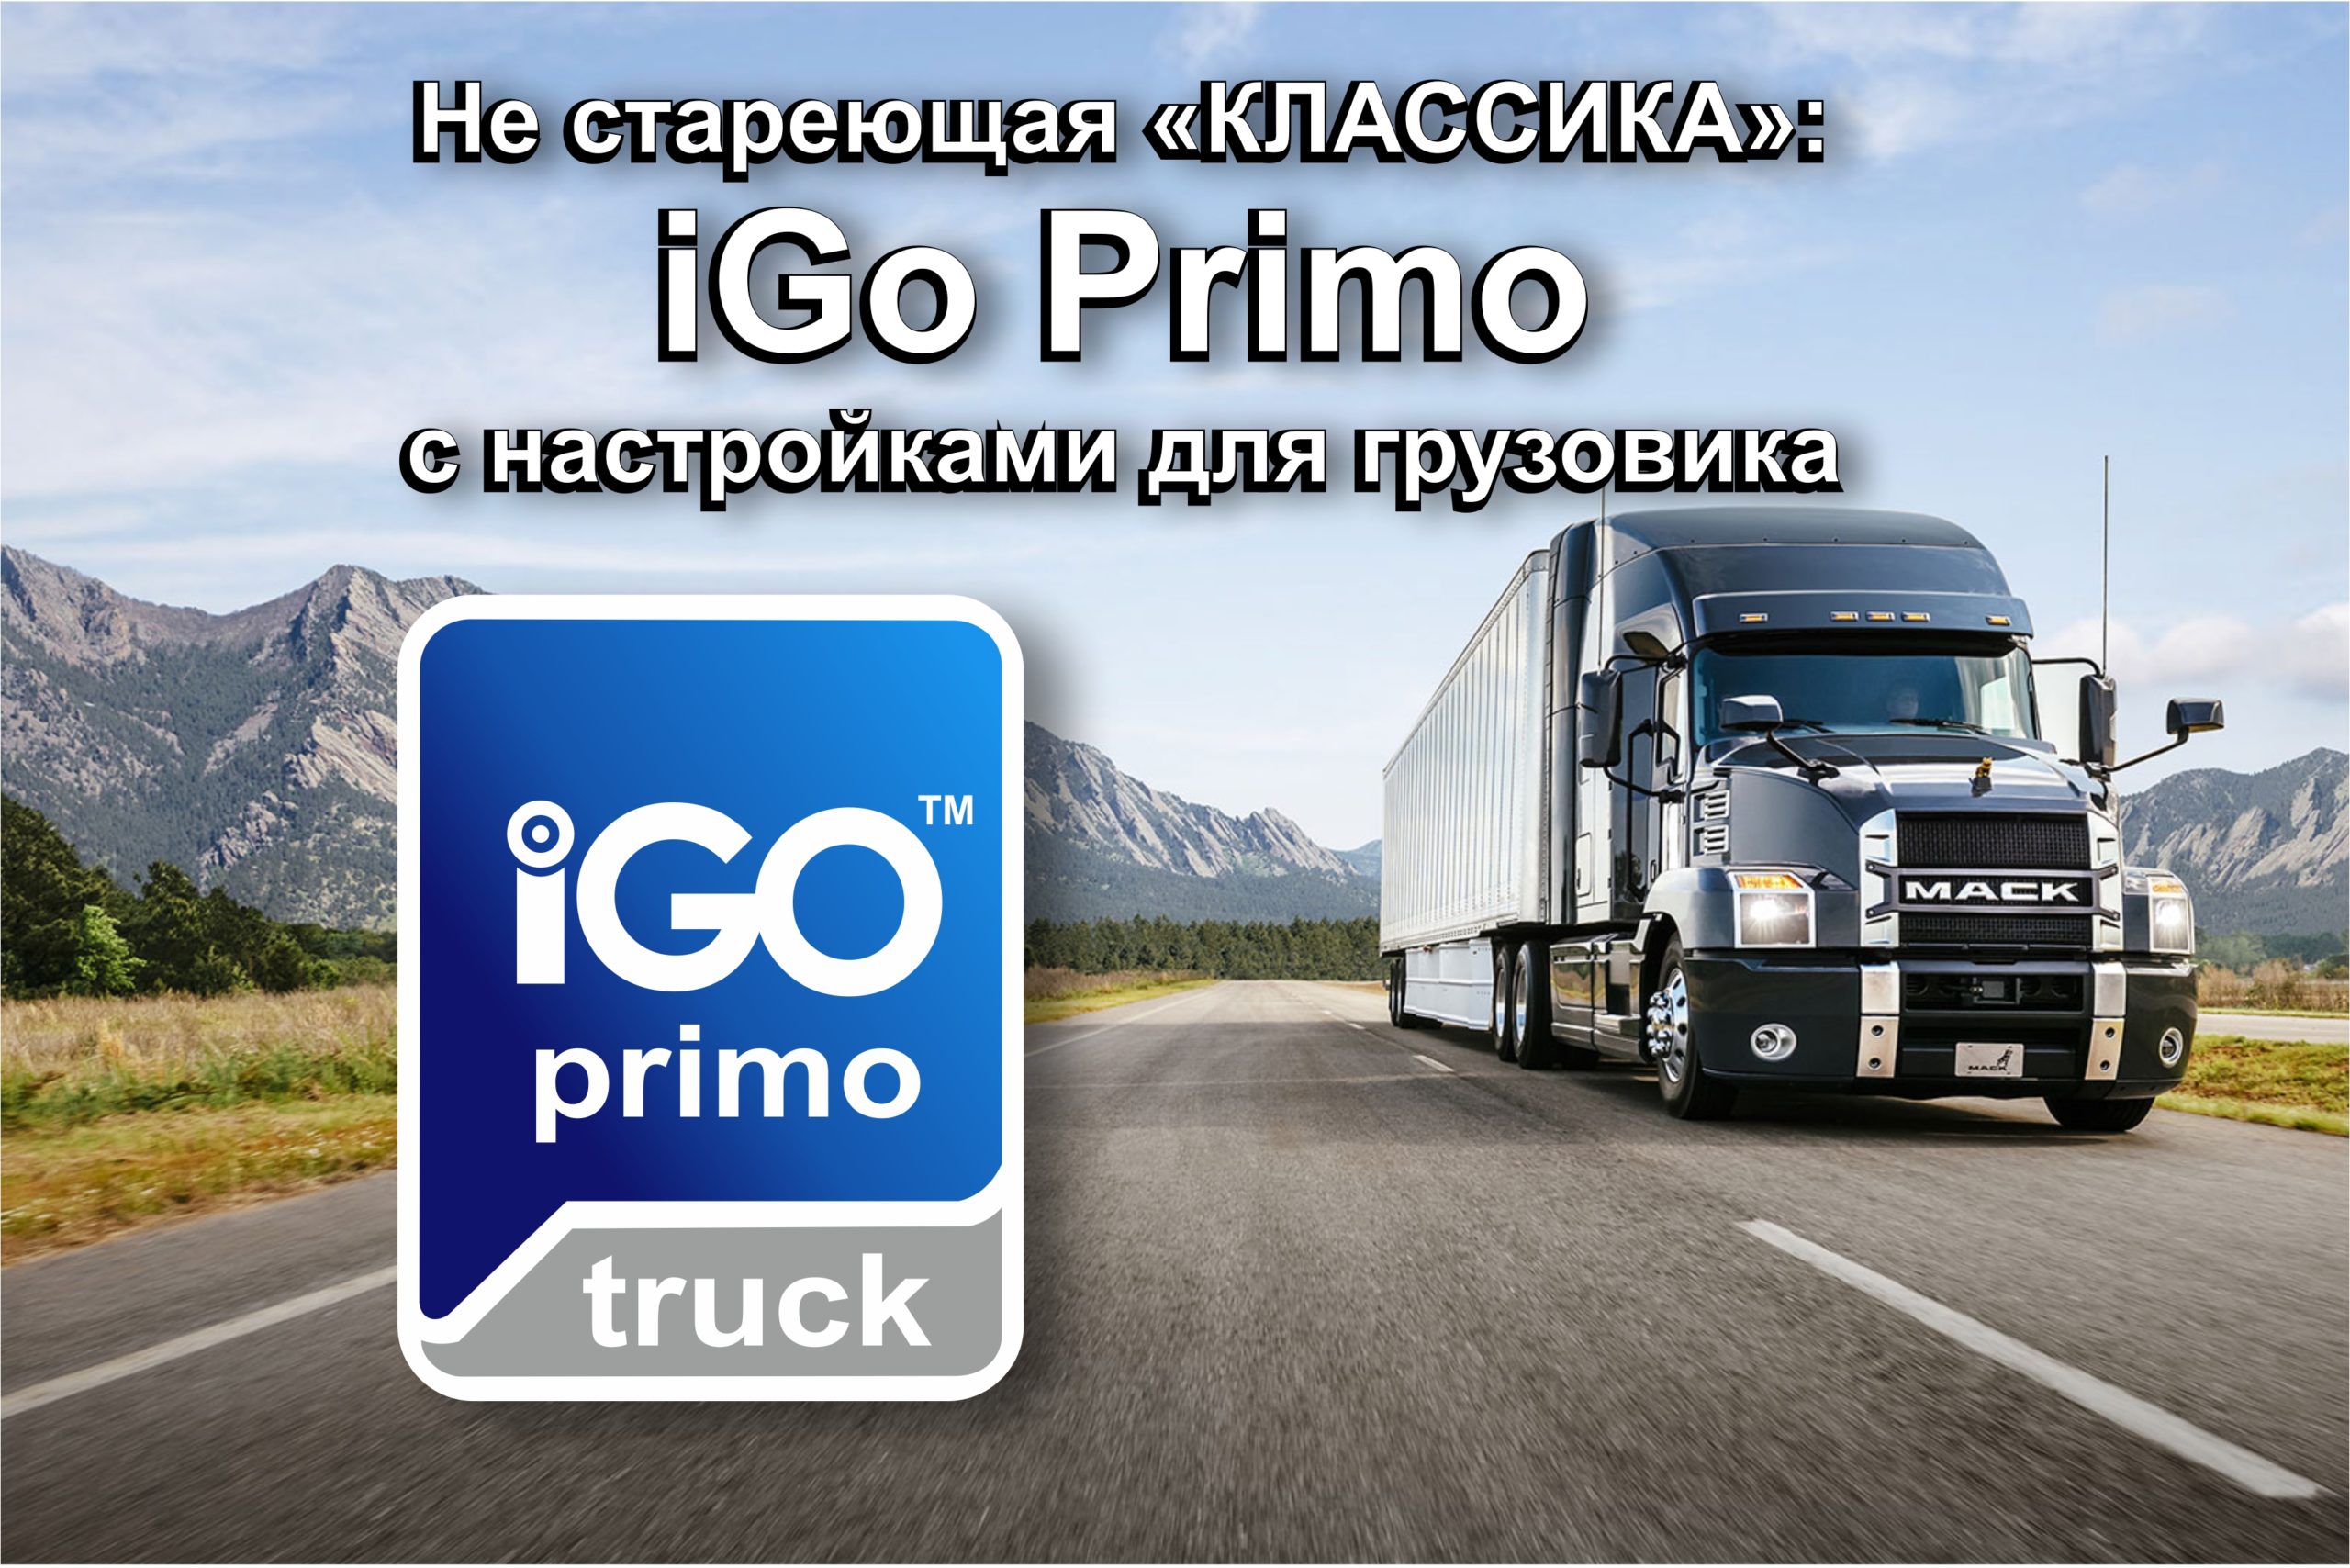 Программа для грузовиков. IGO primo для грузовиков. IGO primo для грузовиков на андроид. Фура леново. Грузовик самсунг.